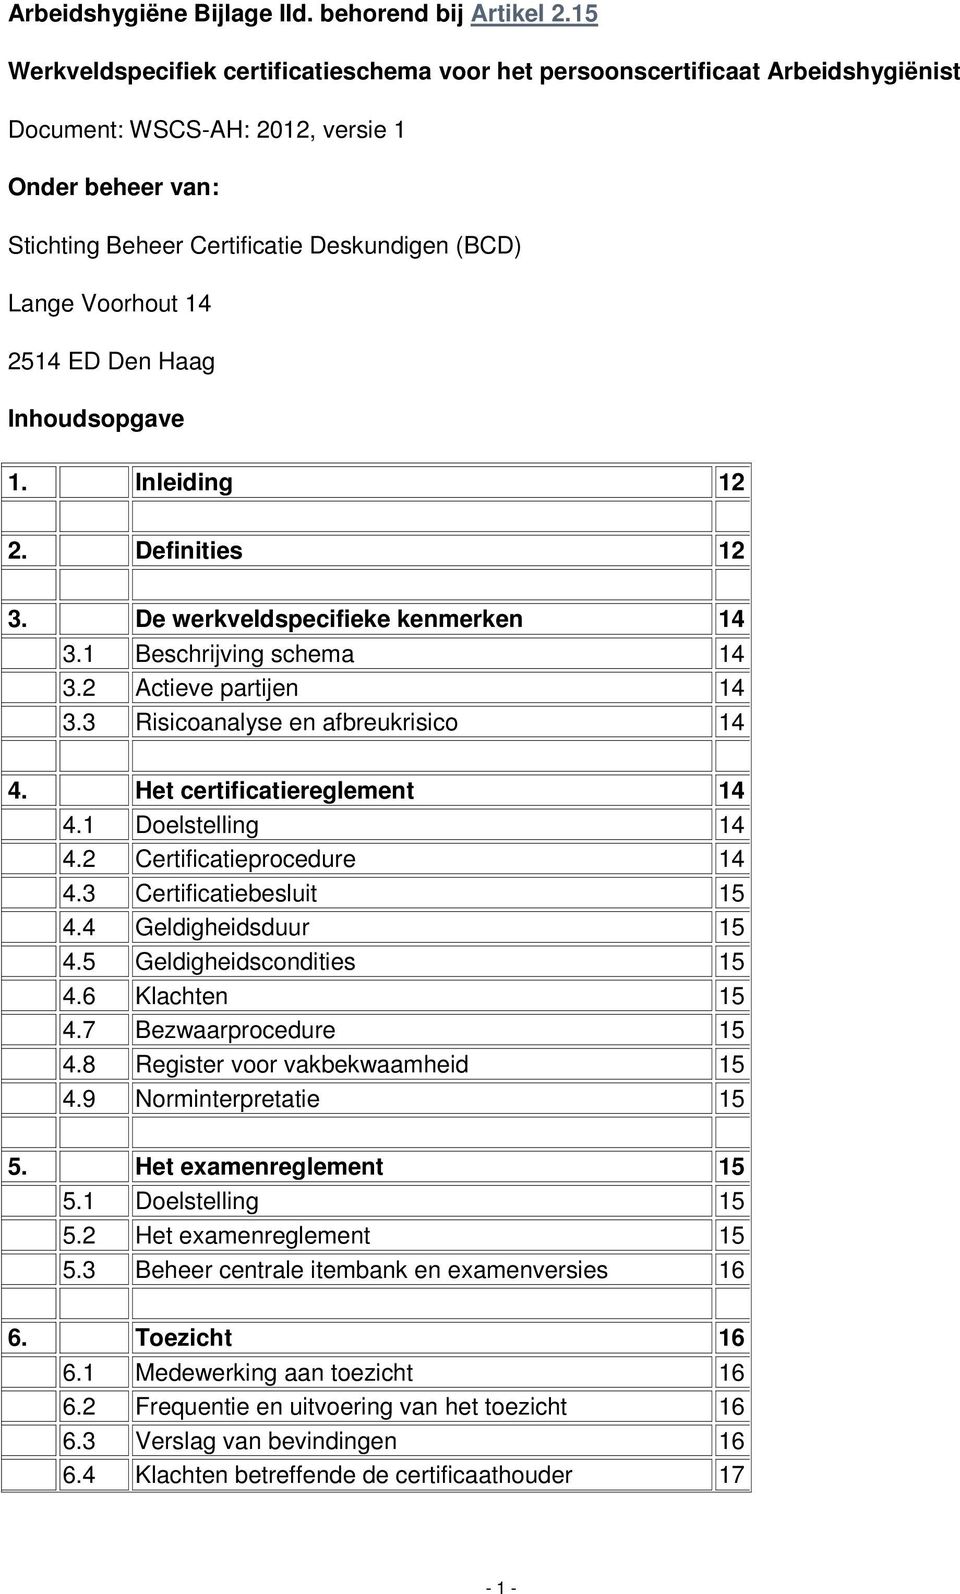 Voorhout 14 2514 ED Den Haag Inhoudsopgave 1. Inleiding 12 2. Definities 12 3. De werkveldspecifieke kenmerken 14 3.1 Beschrijving schema 14 3.2 Actieve partijen 14 3.